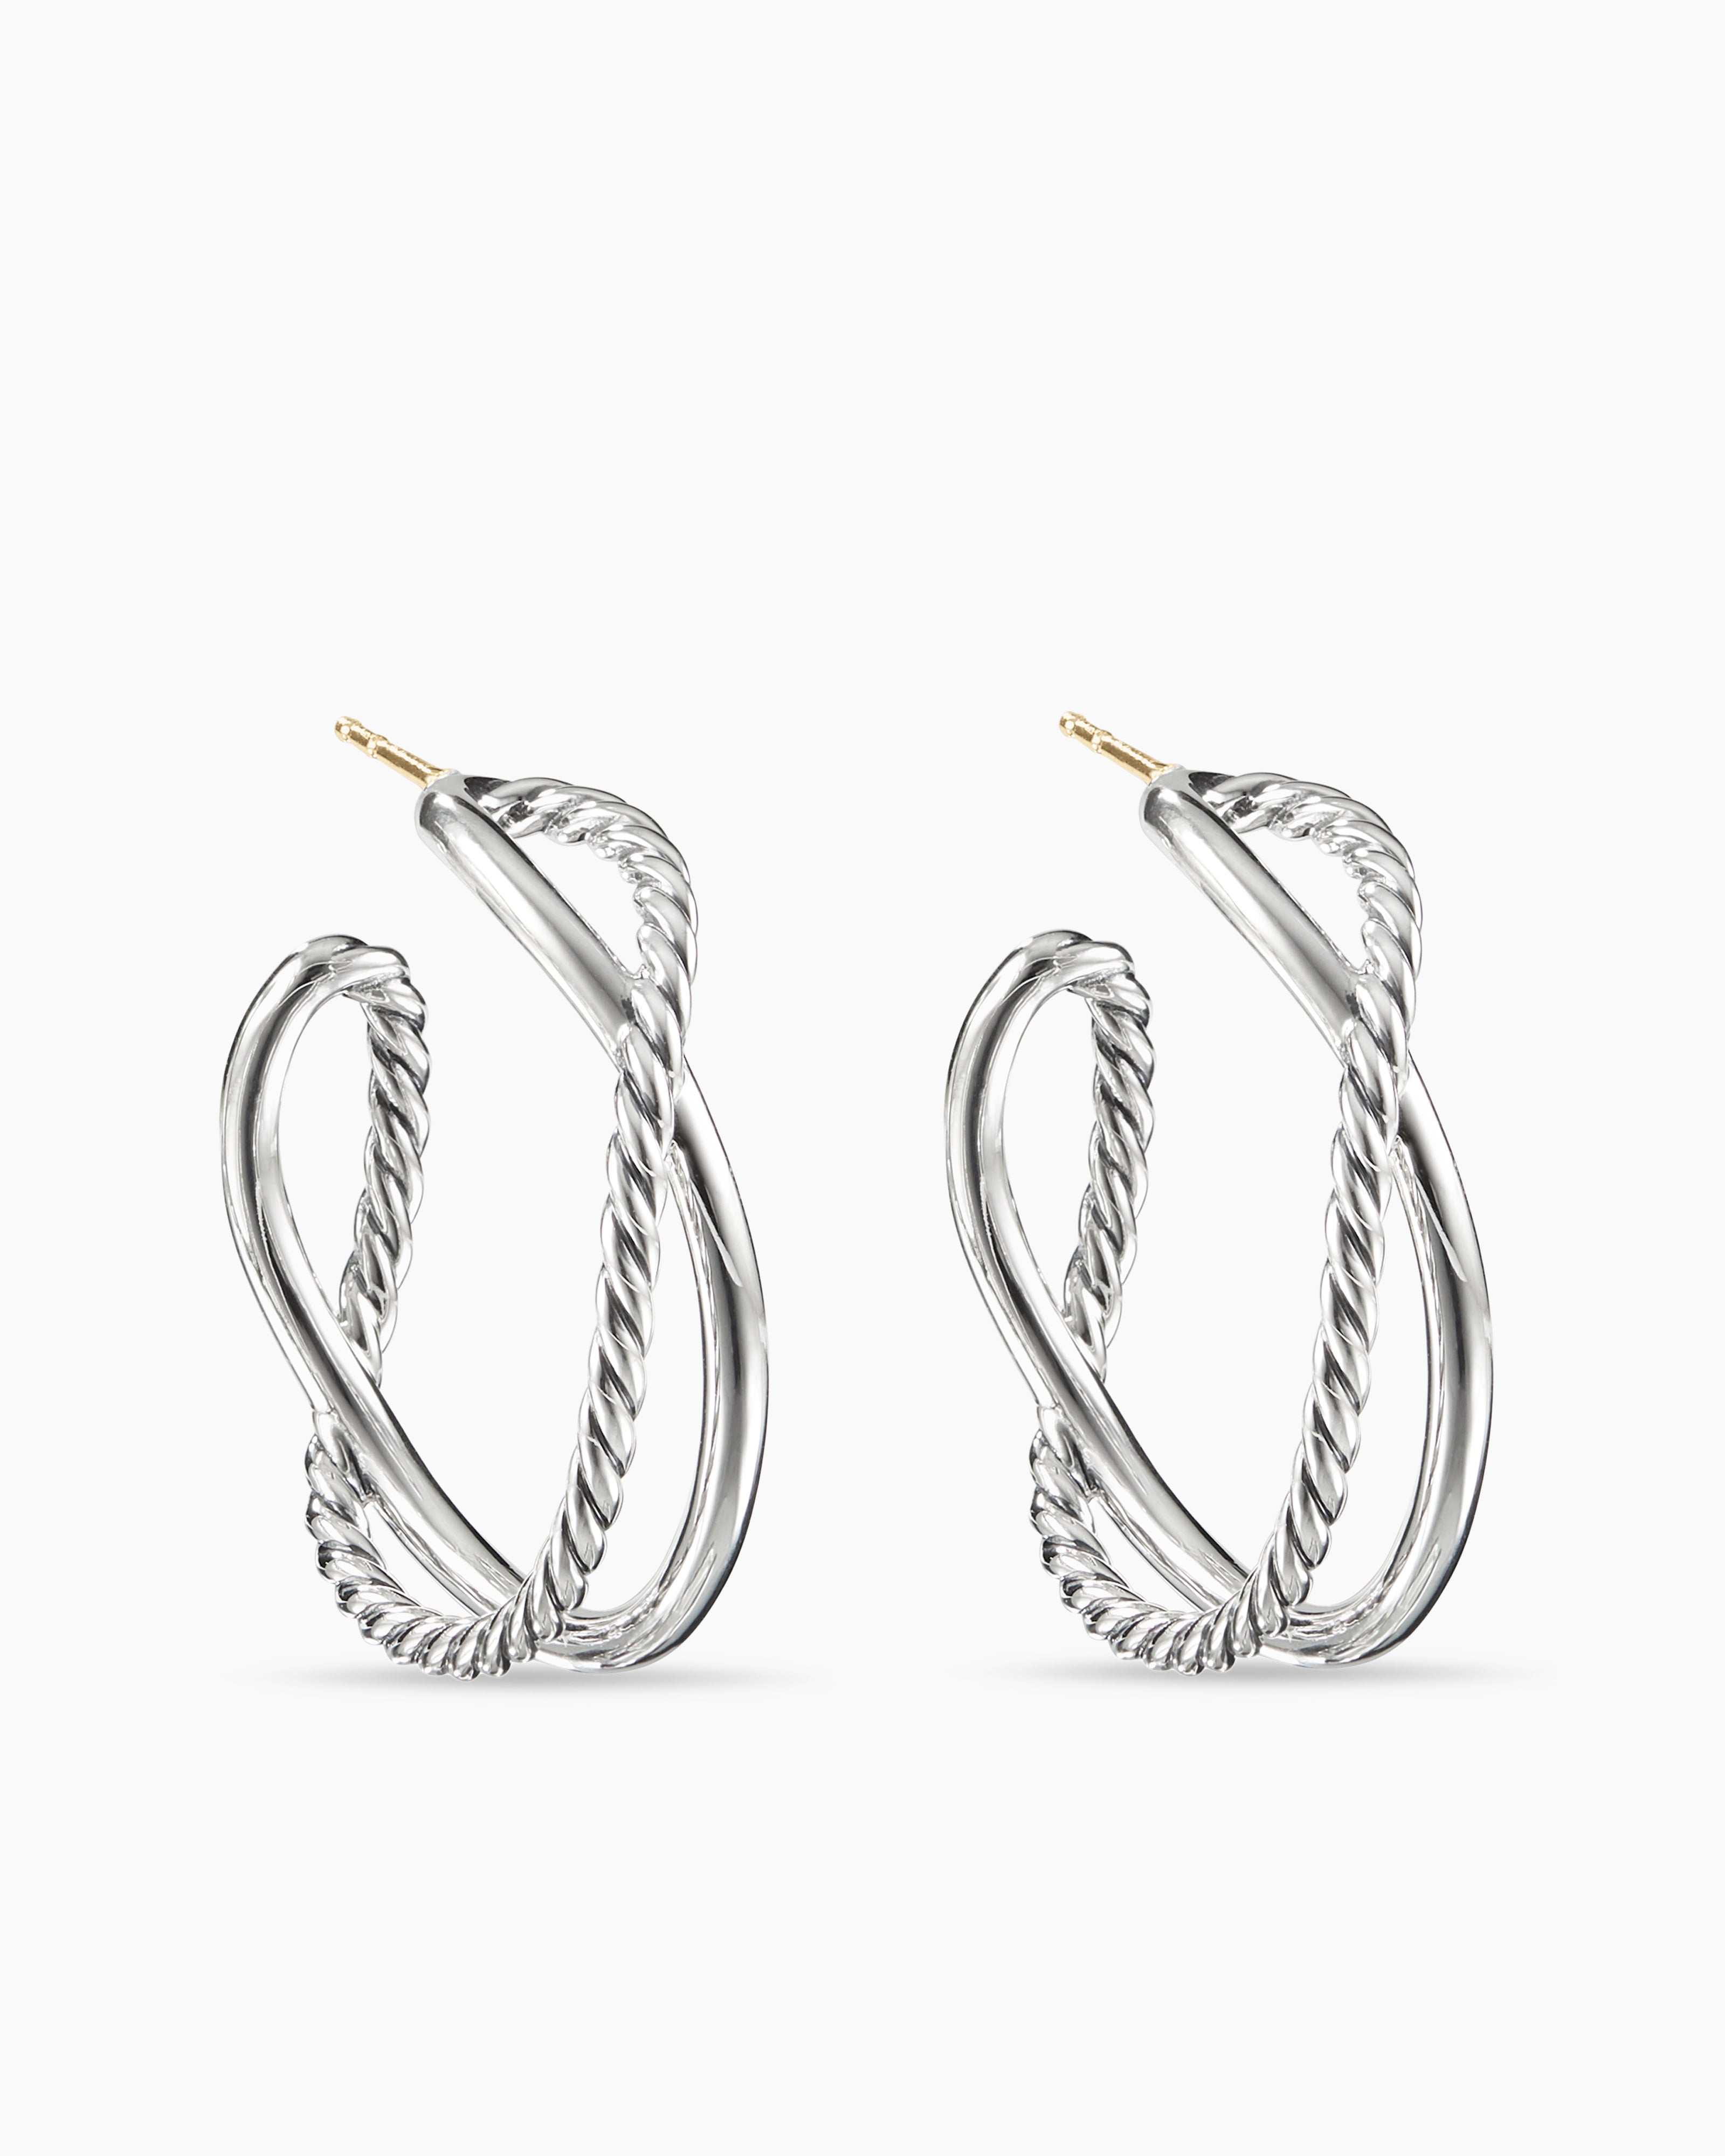 15mm Hoop Earrings in Sterling Silver | Banter